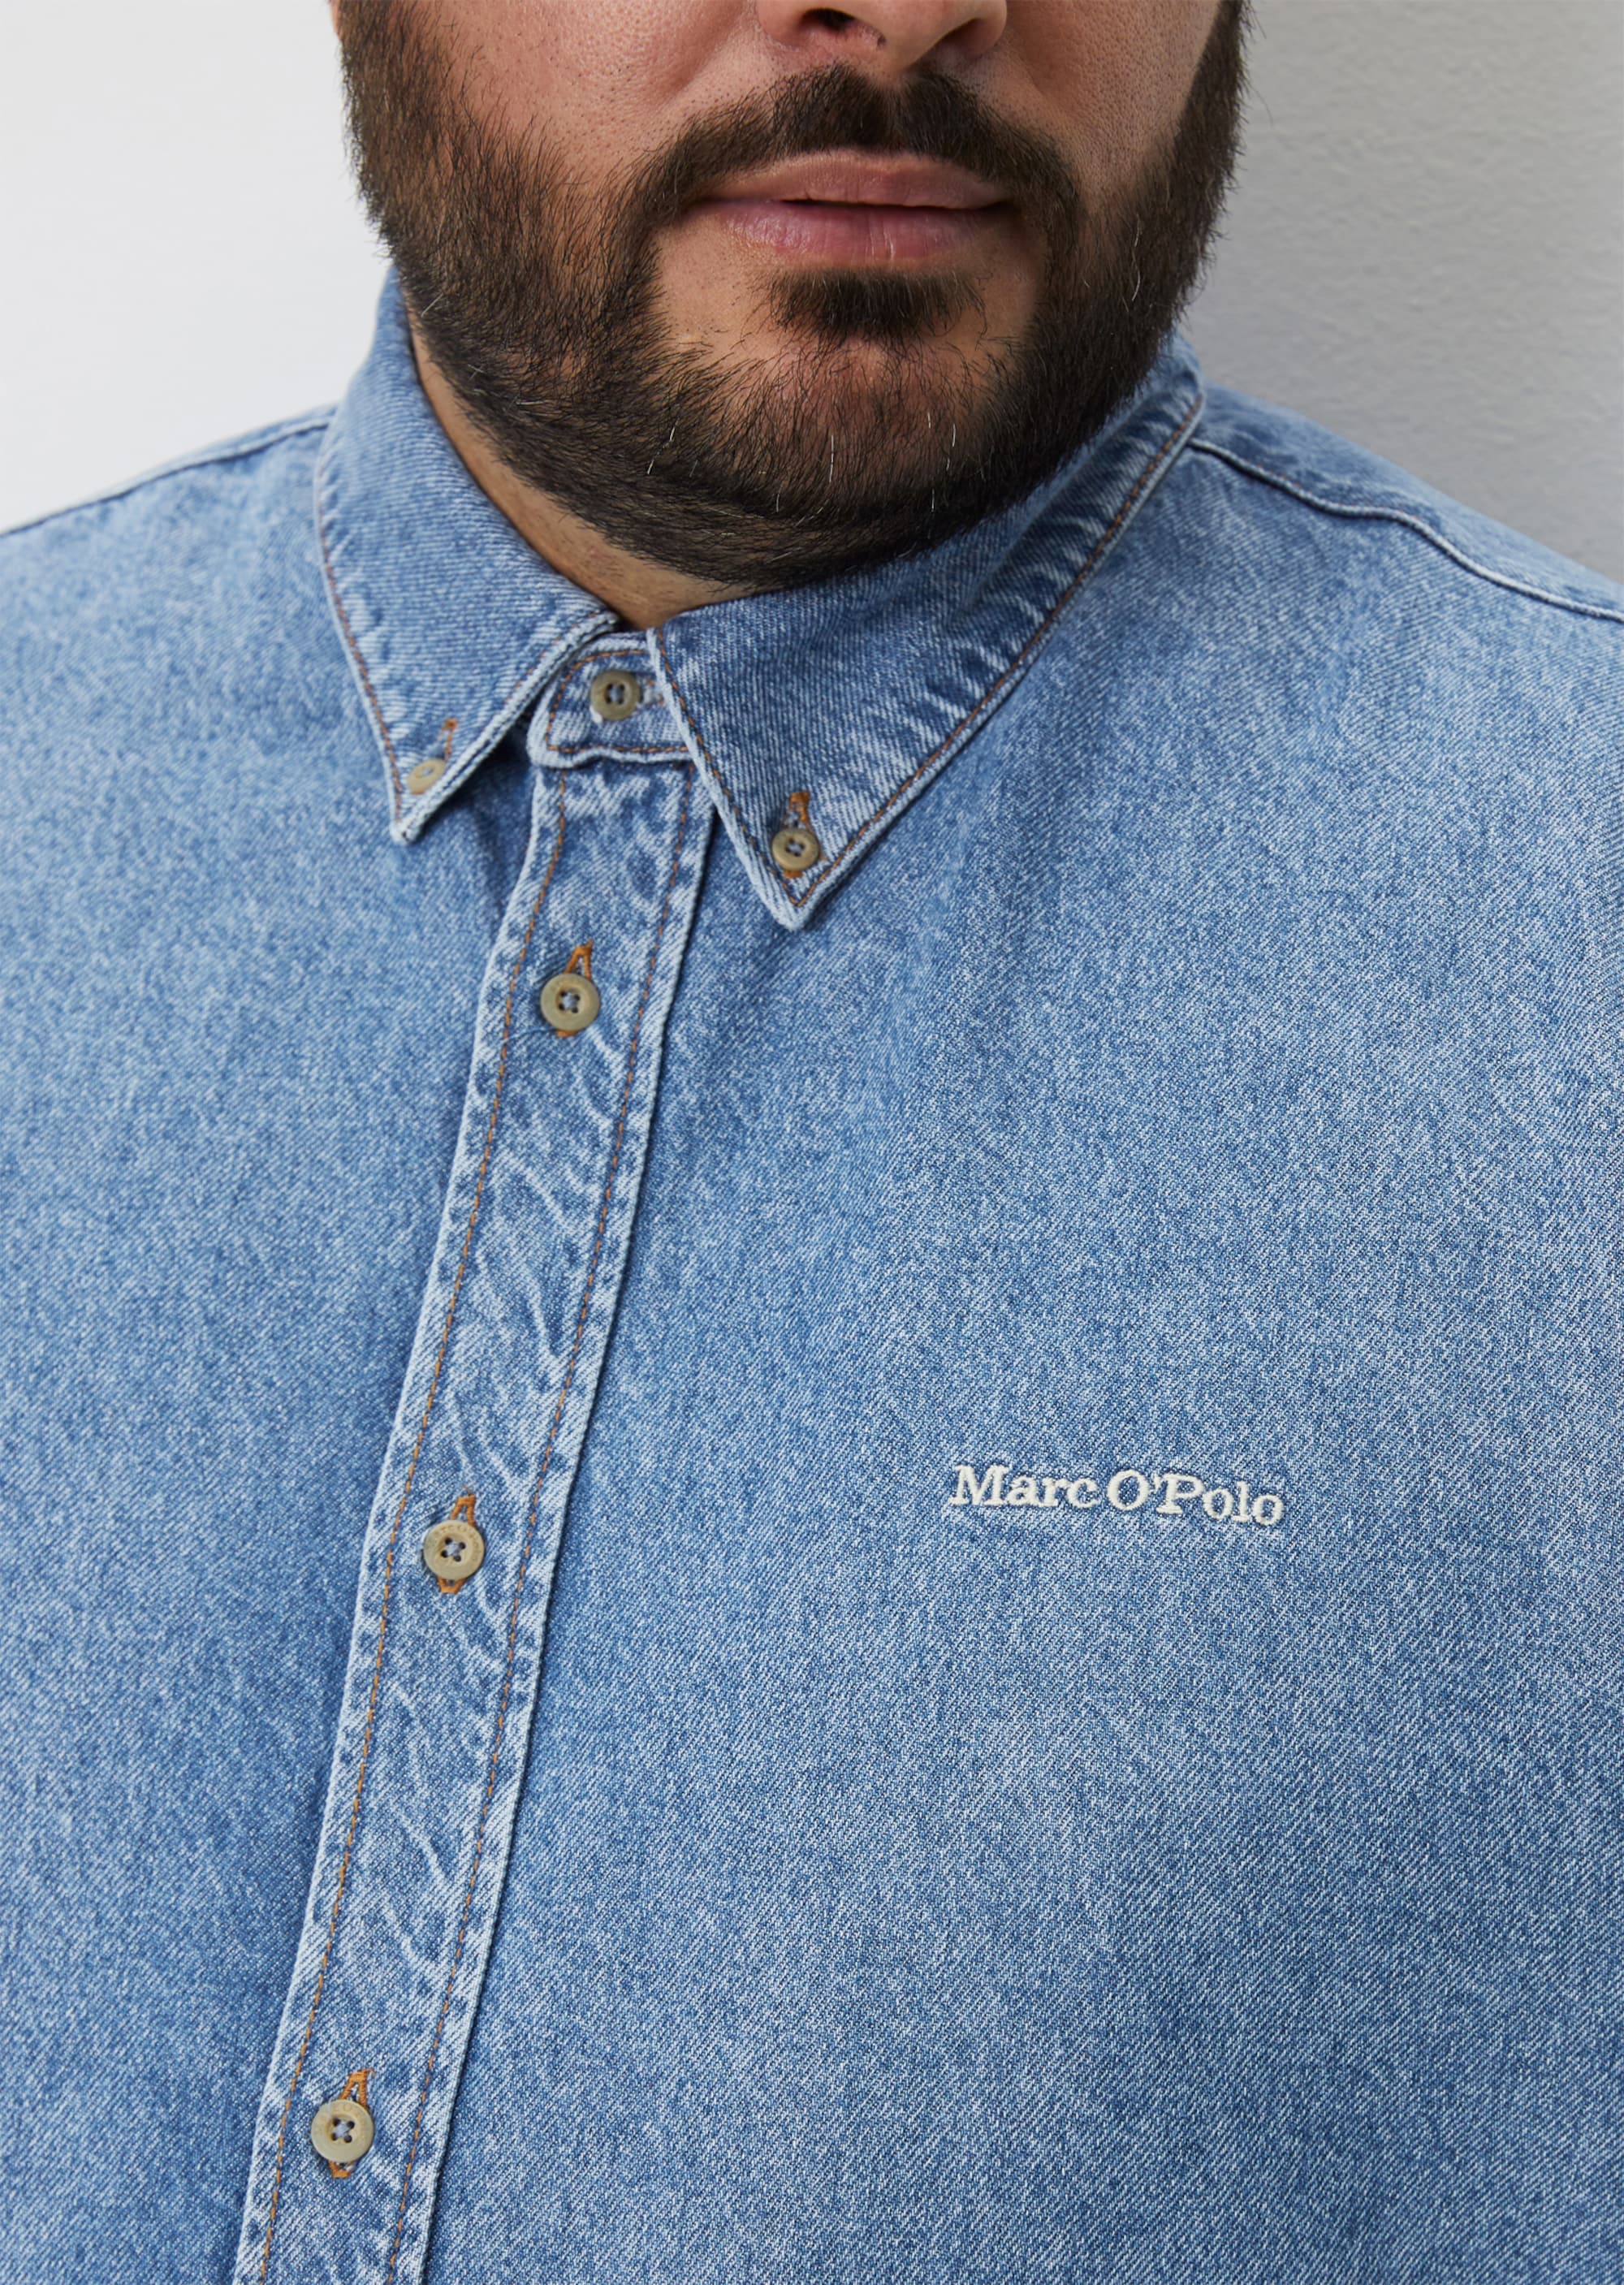 Regular denim shirt with button down collar